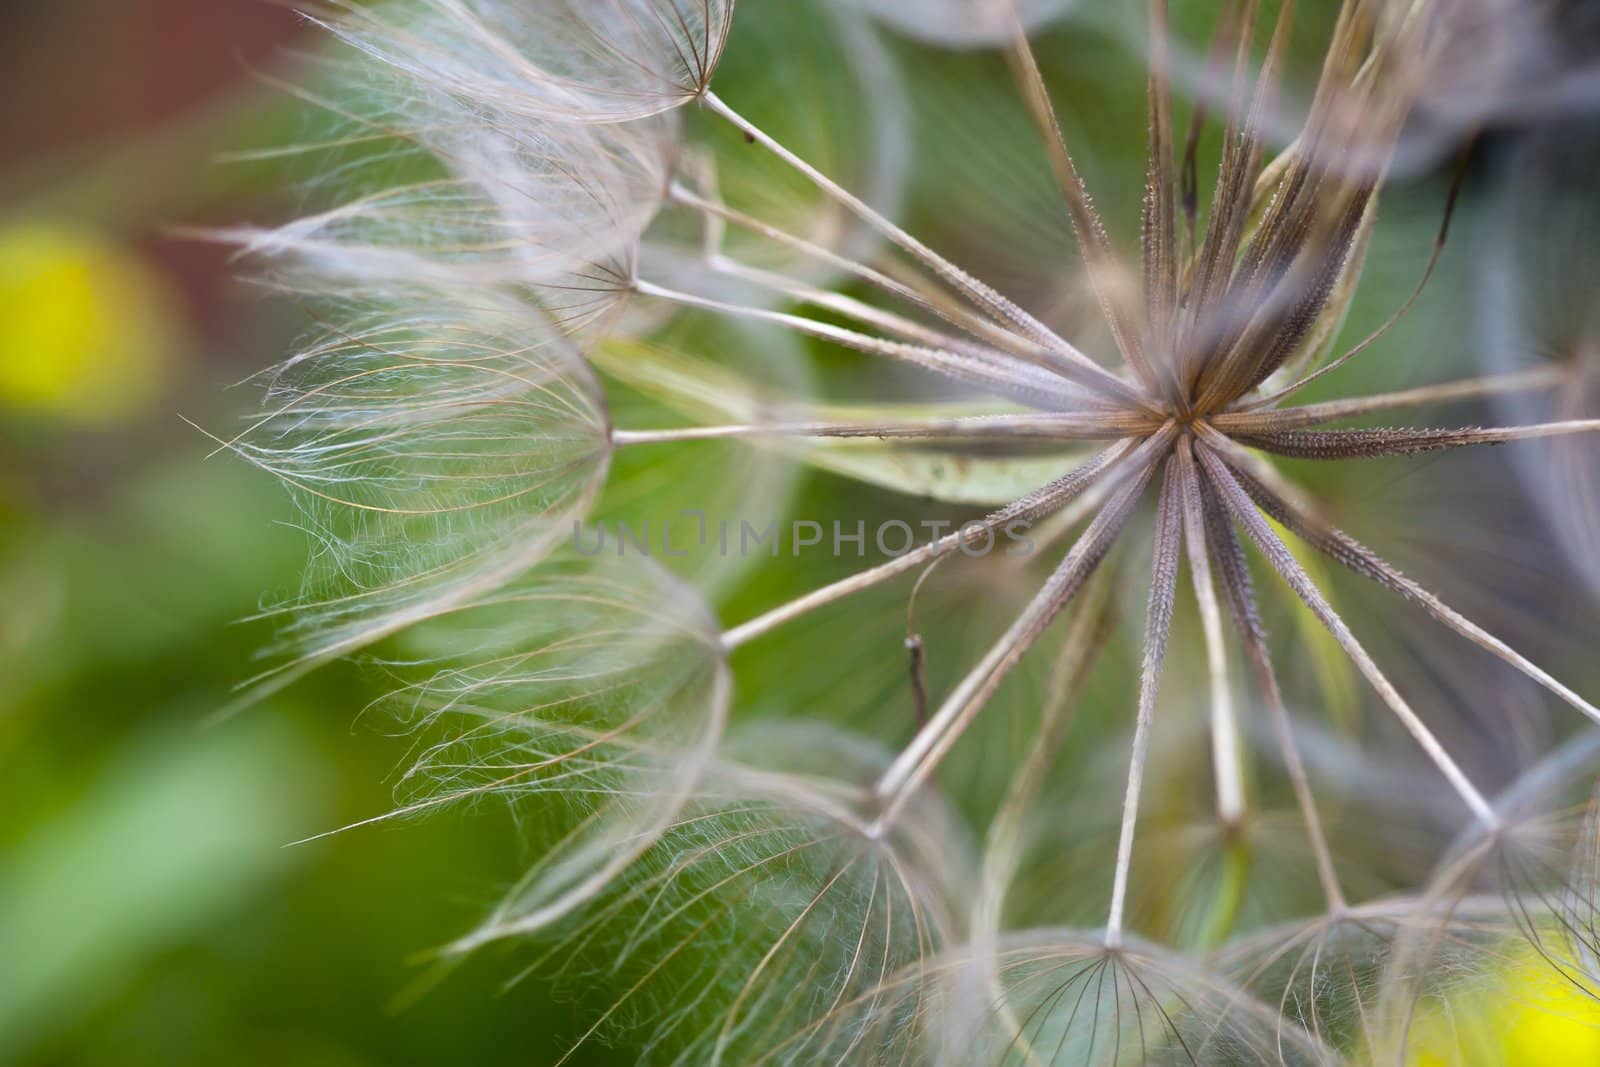 A dandelion in closeup